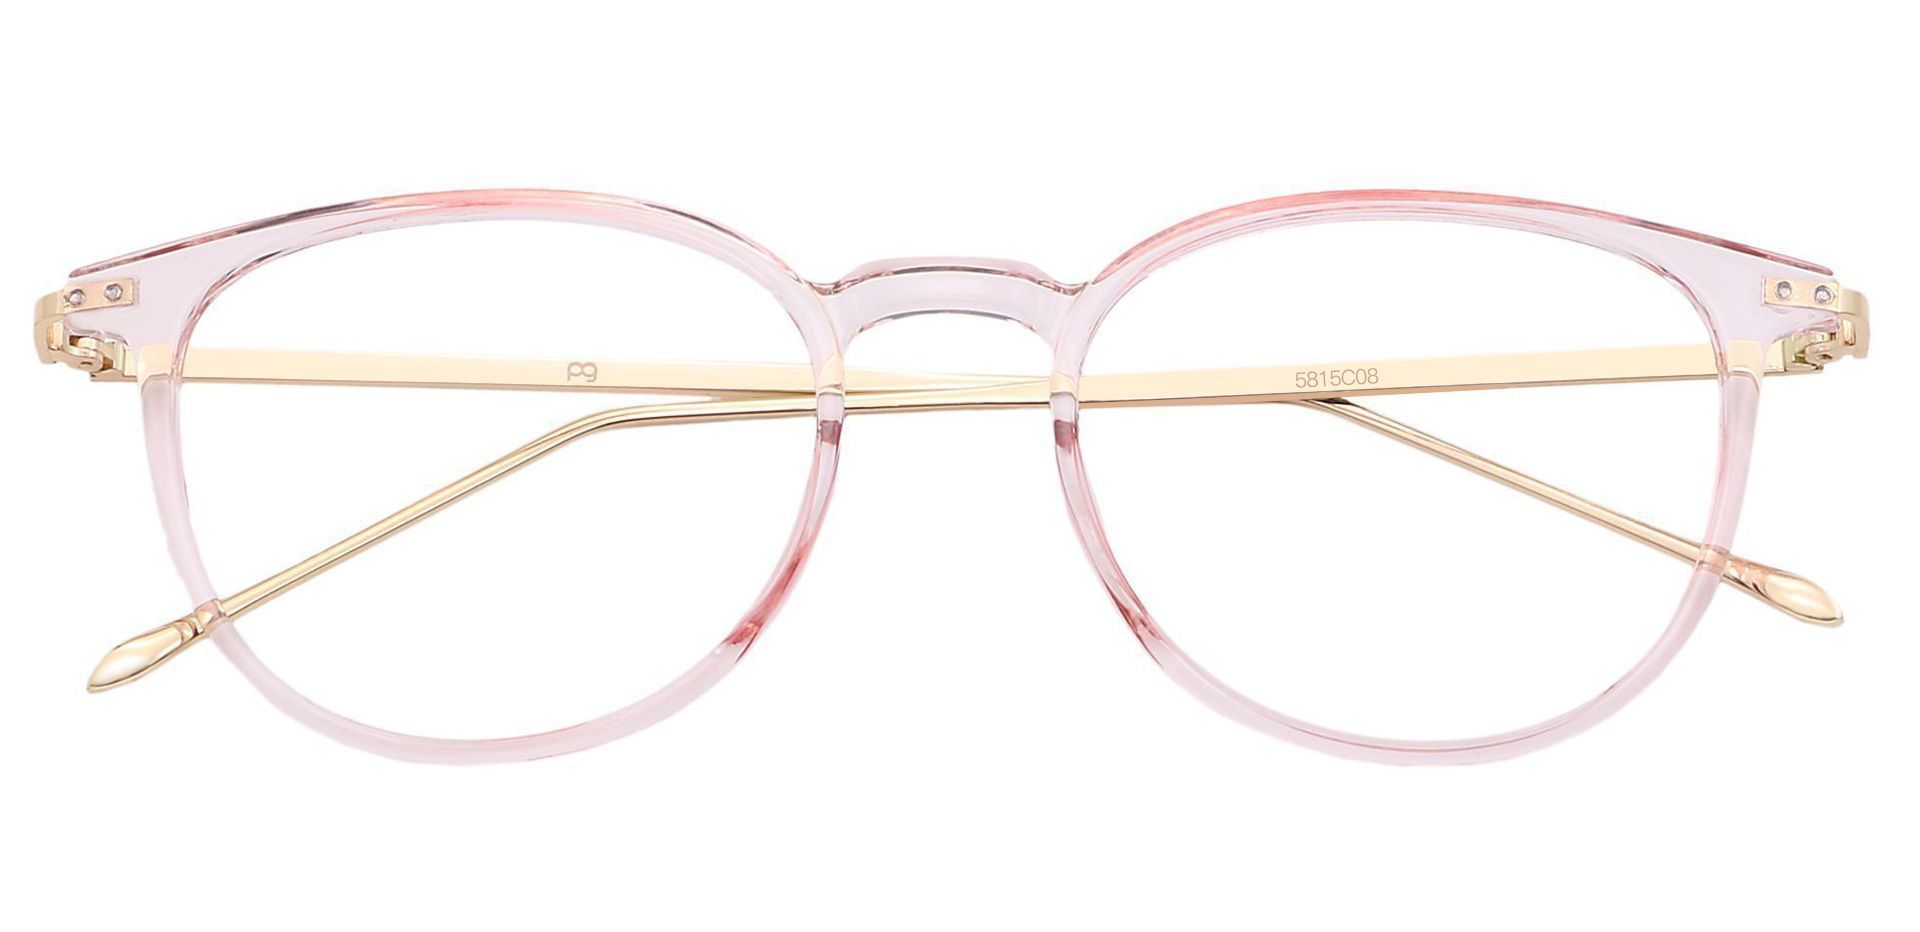 Elliott Round Progressive Glasses - Pink